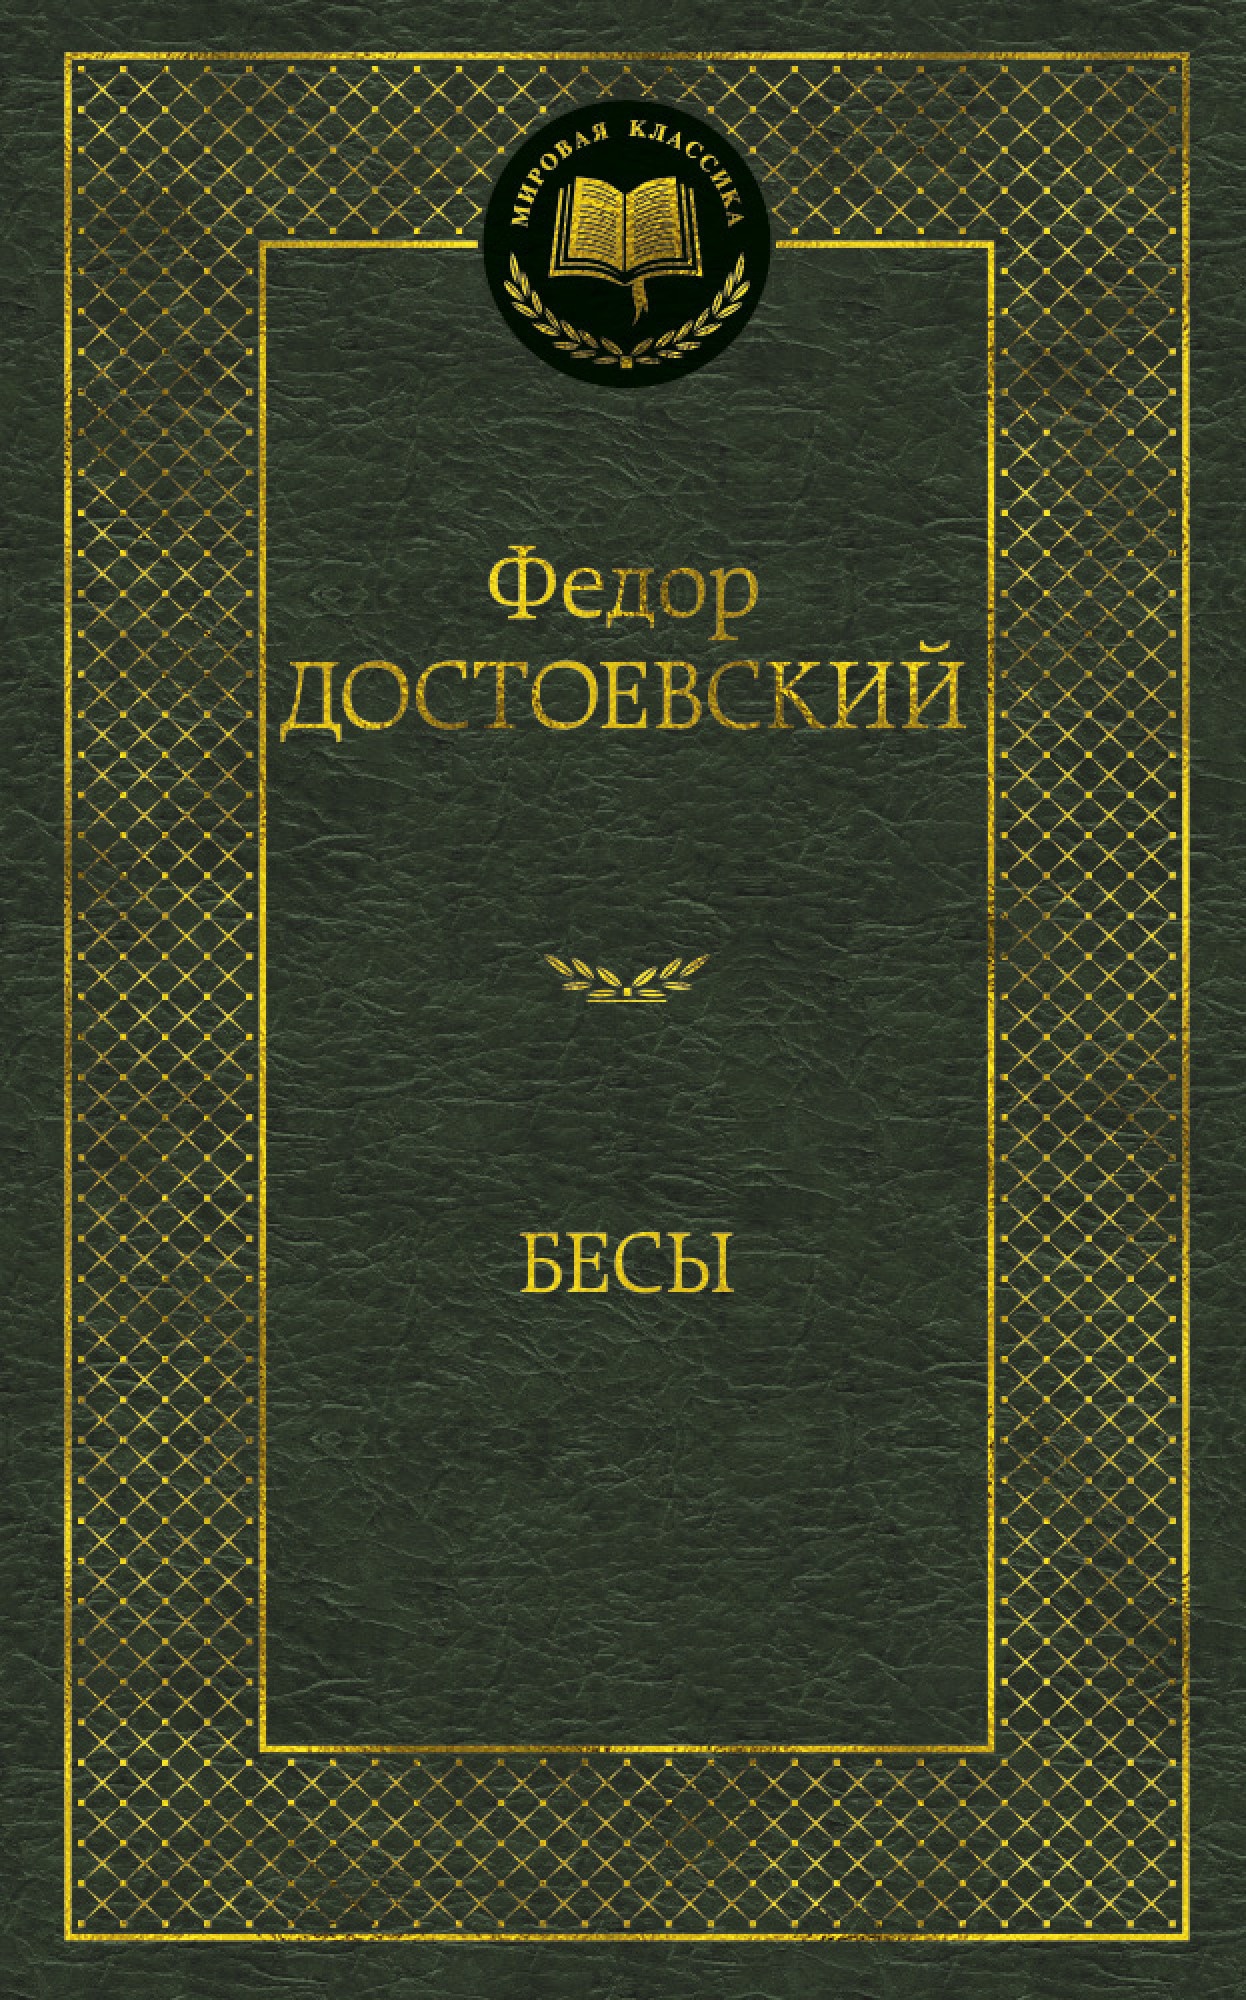 Книга «Бесы» Федор Достоевский — 2021 г.